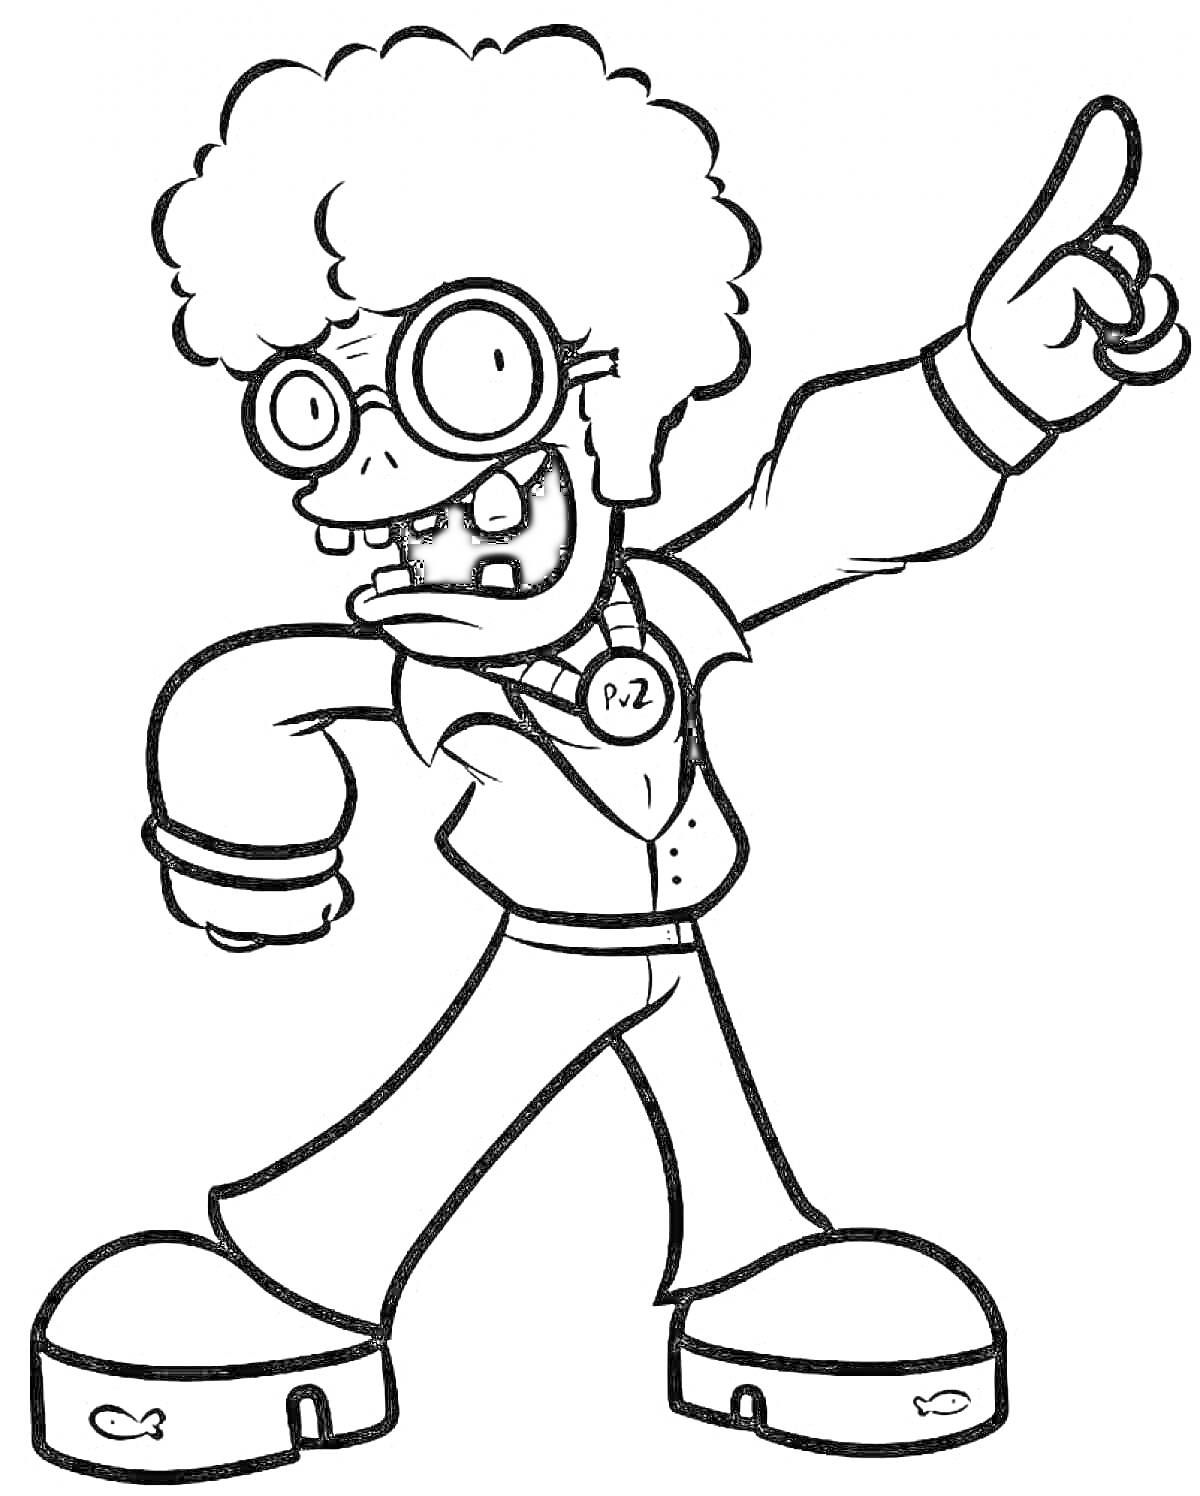 Раскраска Зомби с большими очками и афро-прической, жесты рукой, значок на шее с буквами P.Z., рубашка, брюки, ботинки с рыбками